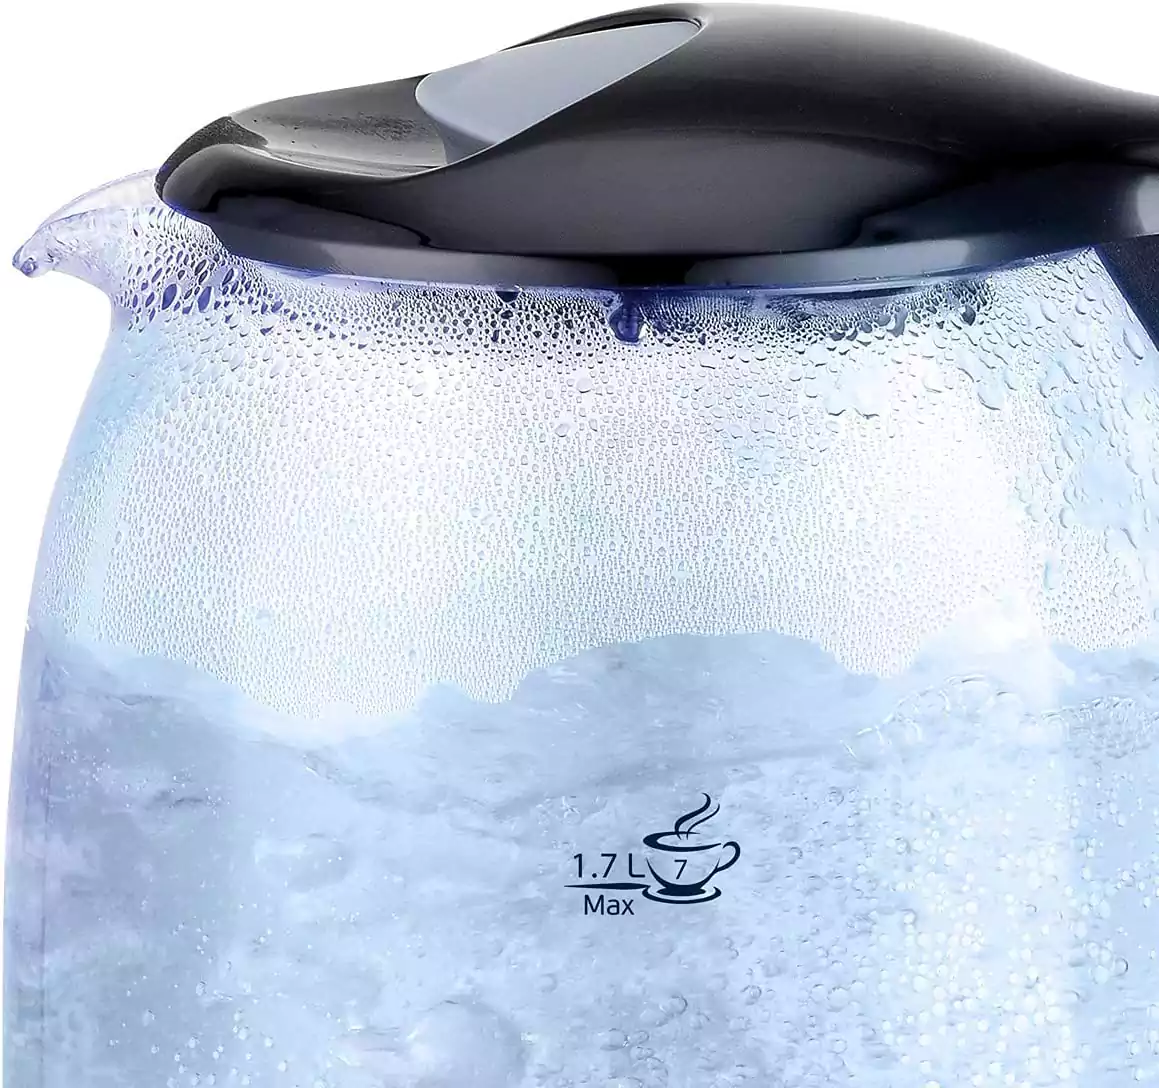 غلاية مياه زجاج سوناي كلاسيك، 1.7 لتر، أسود - MAR.3752